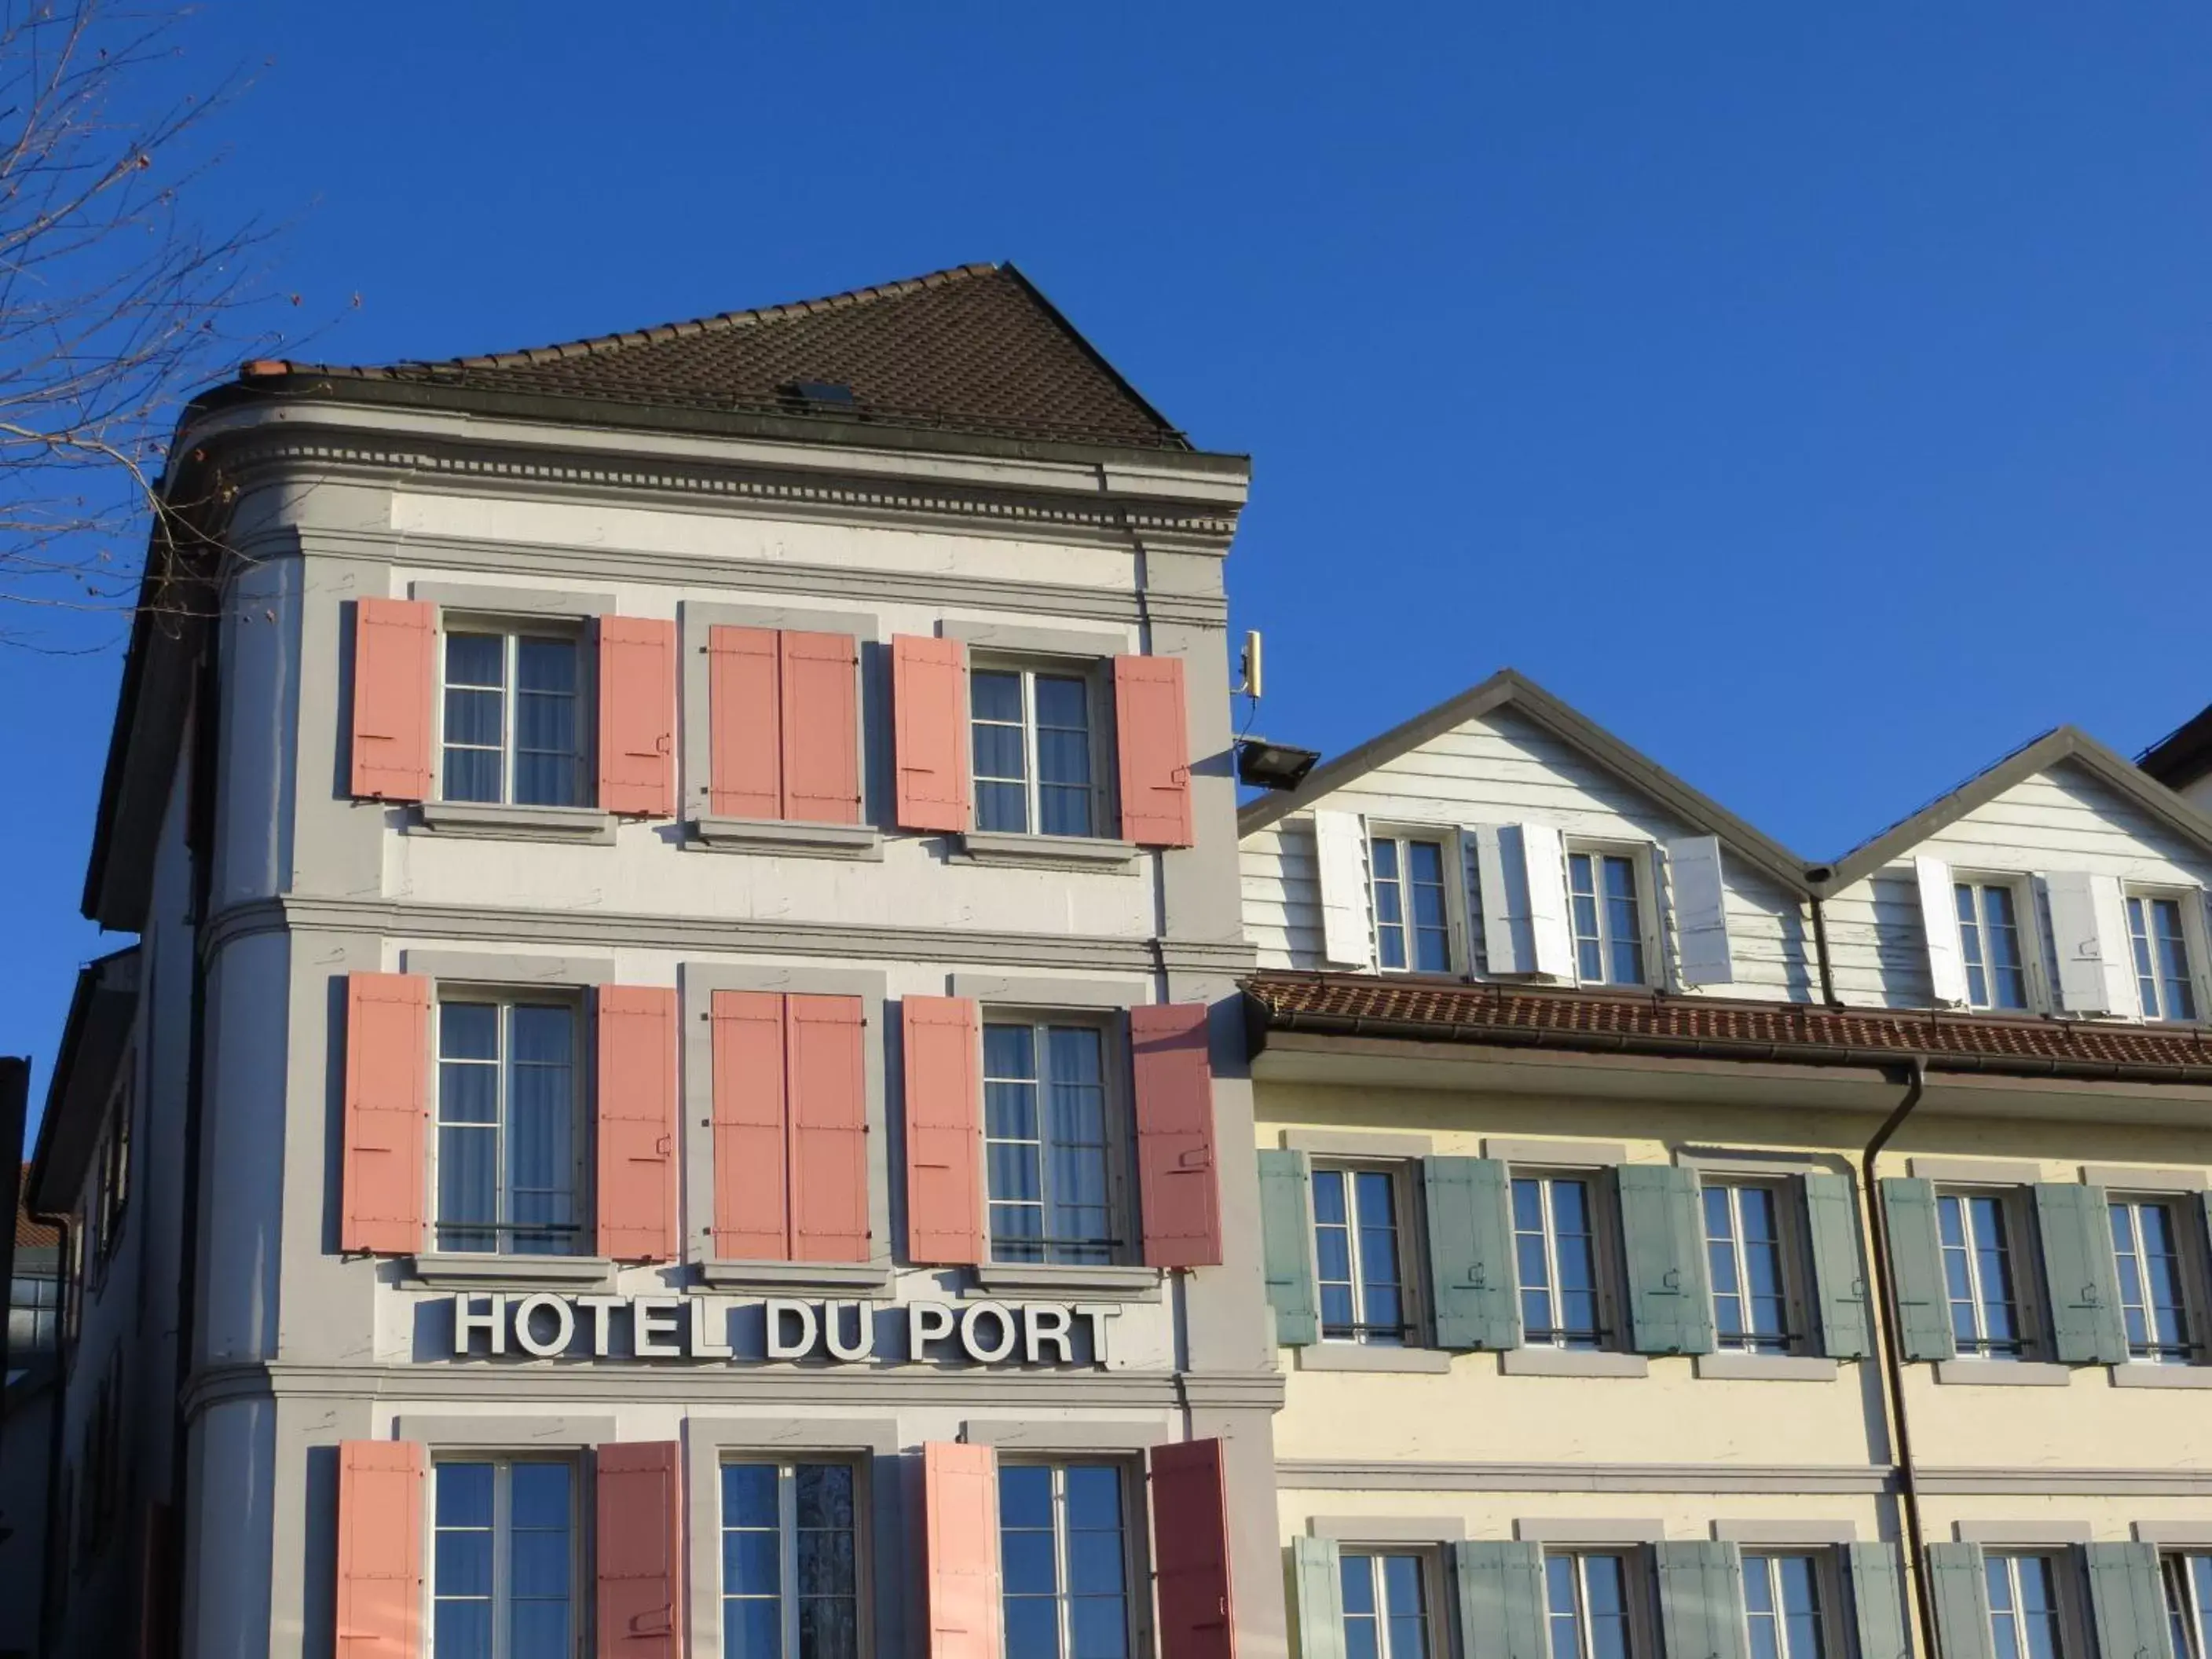 Facade/entrance, Property Building in Hôtel du Port